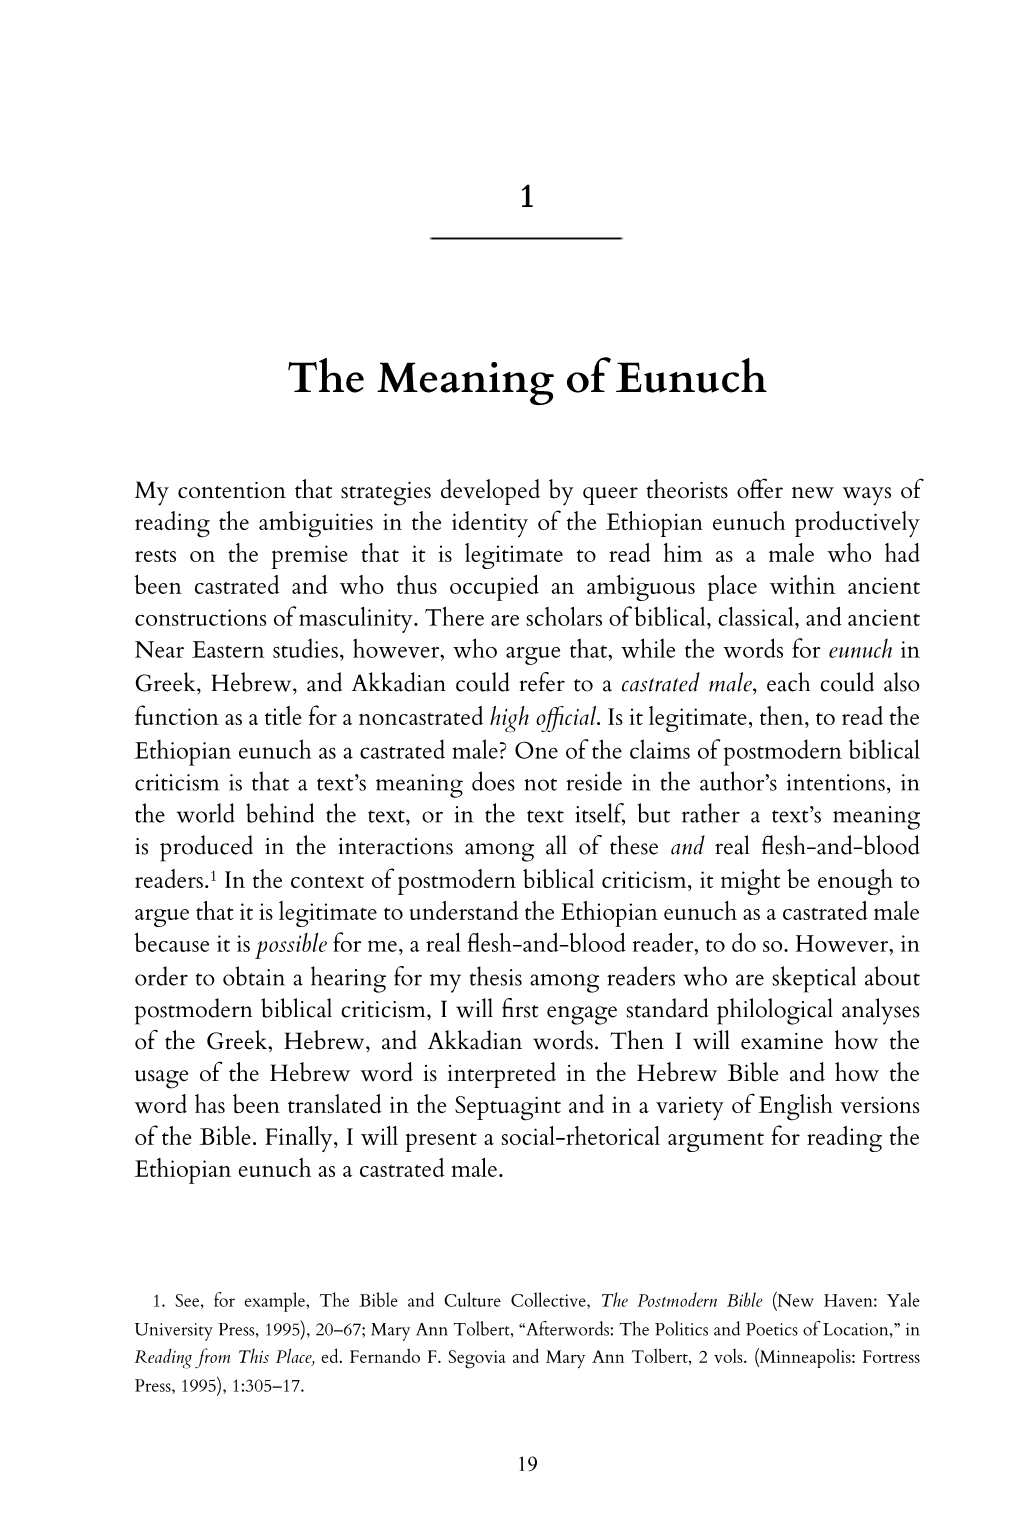 Queering the Ethiopian Eunuch